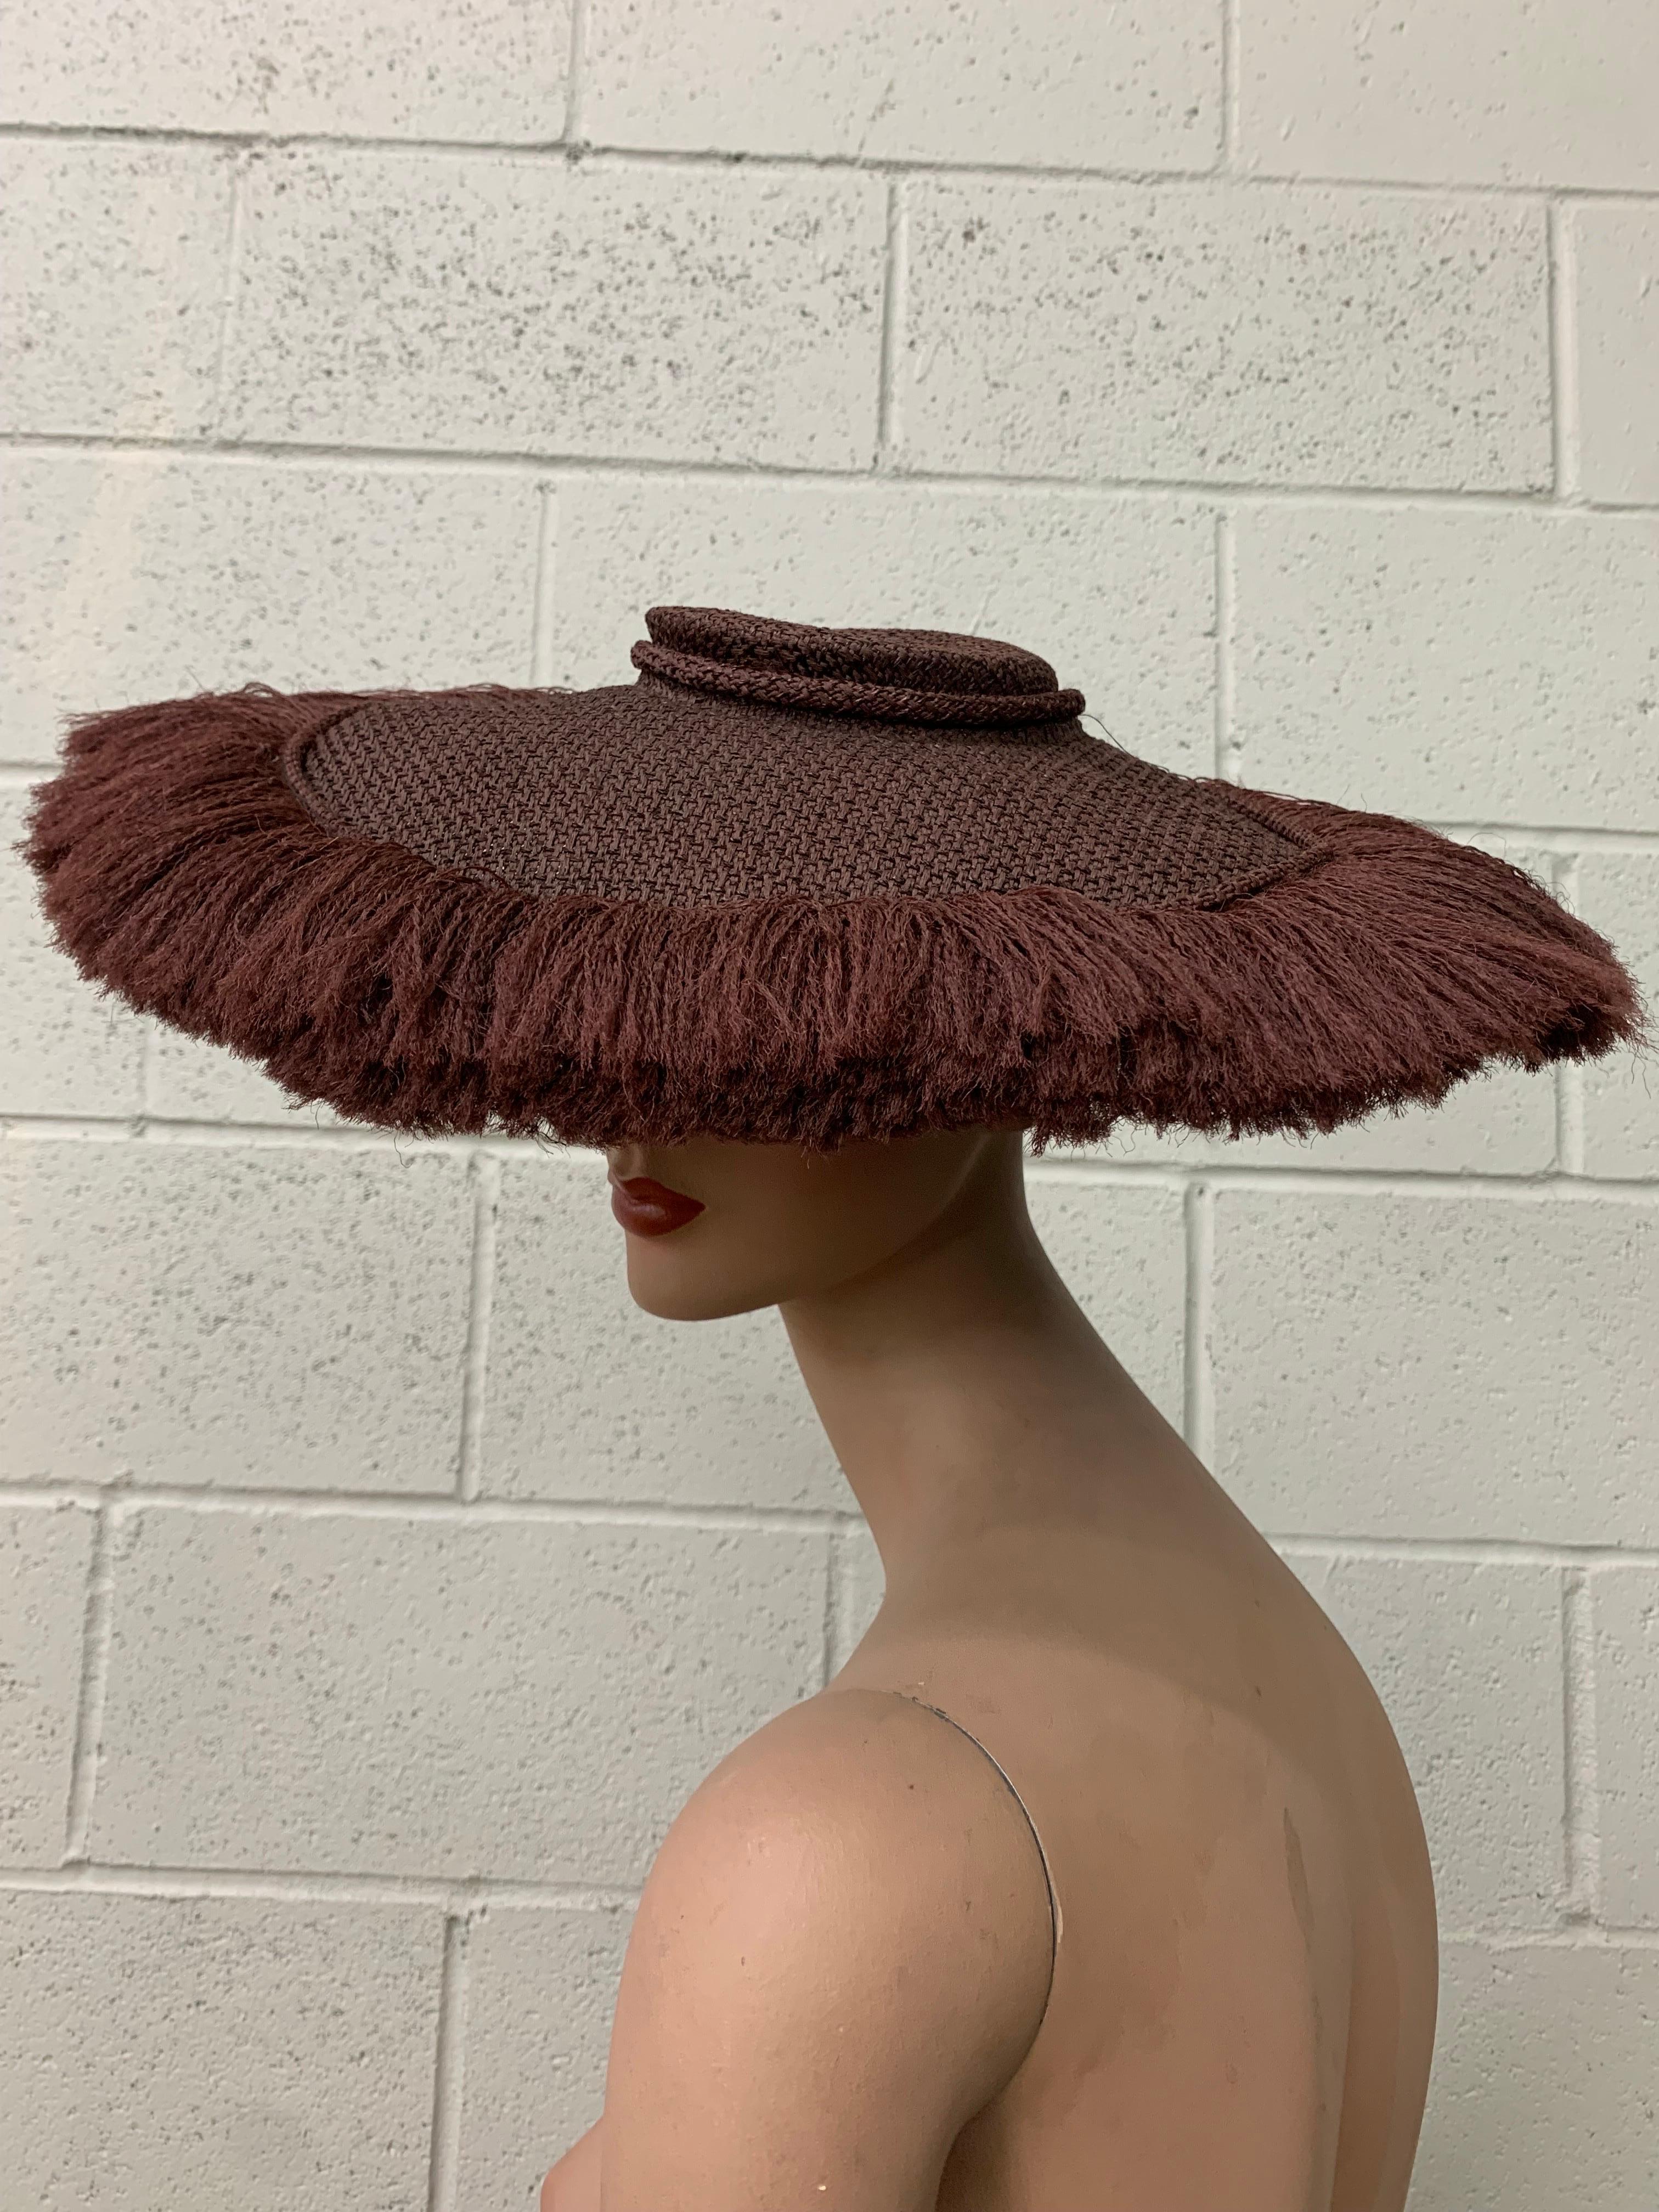 1940er Shenley's Cocoa Brown Rayon gewebt & Fransen Untertasse Hut w Low Crown:  Gut strukturiertes Innenband und Krempe für Stabilität. Atemberaubende Silhouette. Der gewebte Kronenstoff wird als schwerer Vorhang mit Fransen am Rand verwendet. Eine